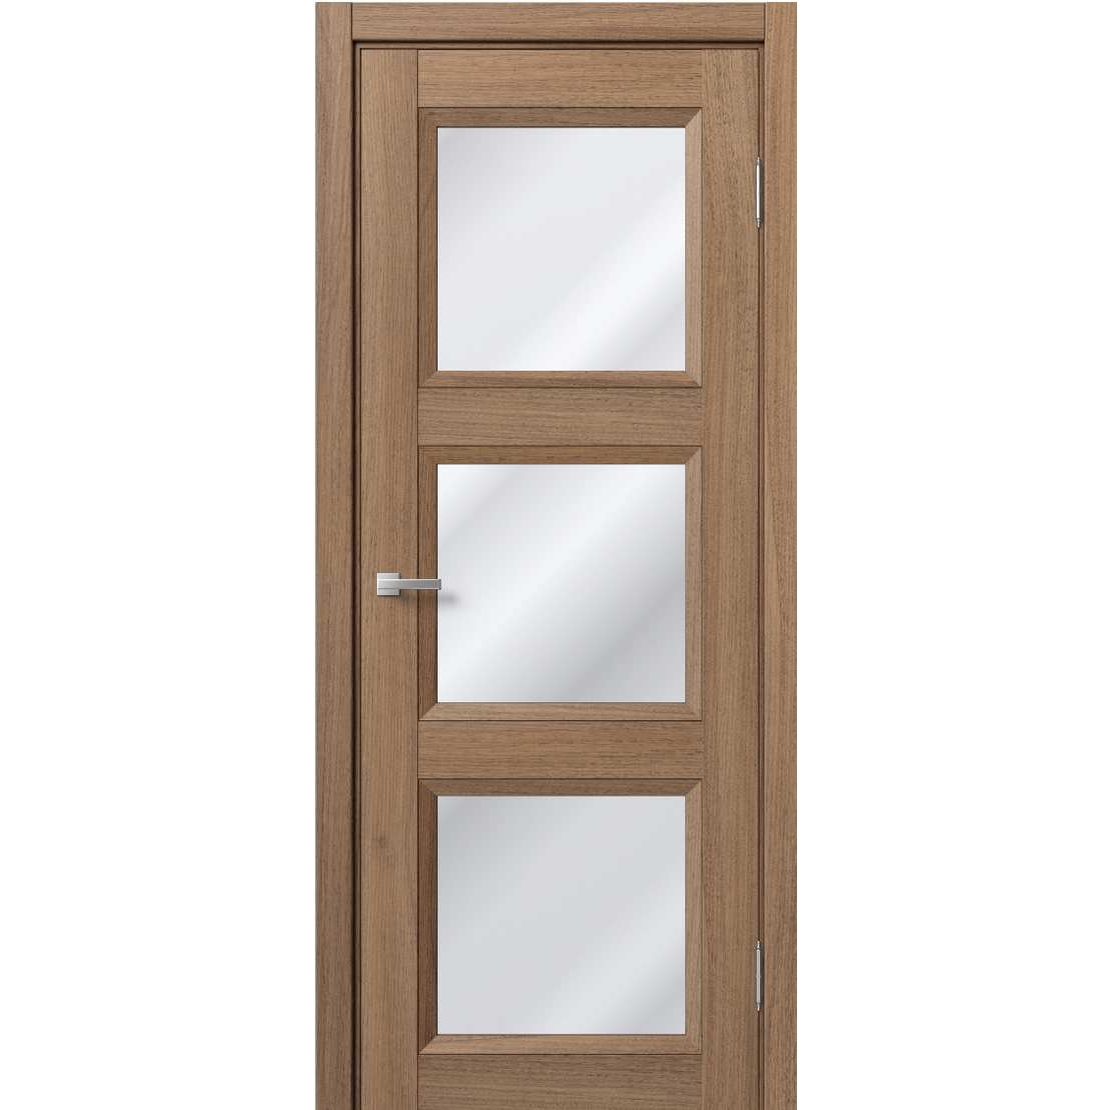 Дверь коричневая со стеклом. Дверное полотно царги ПВХ остекленное Comfort-2 кедр венге 3d 600мм BROZEX-Wood *1. Двери межкомнатные коричневые со стеклом. Дверь межкомнатная коричневая.